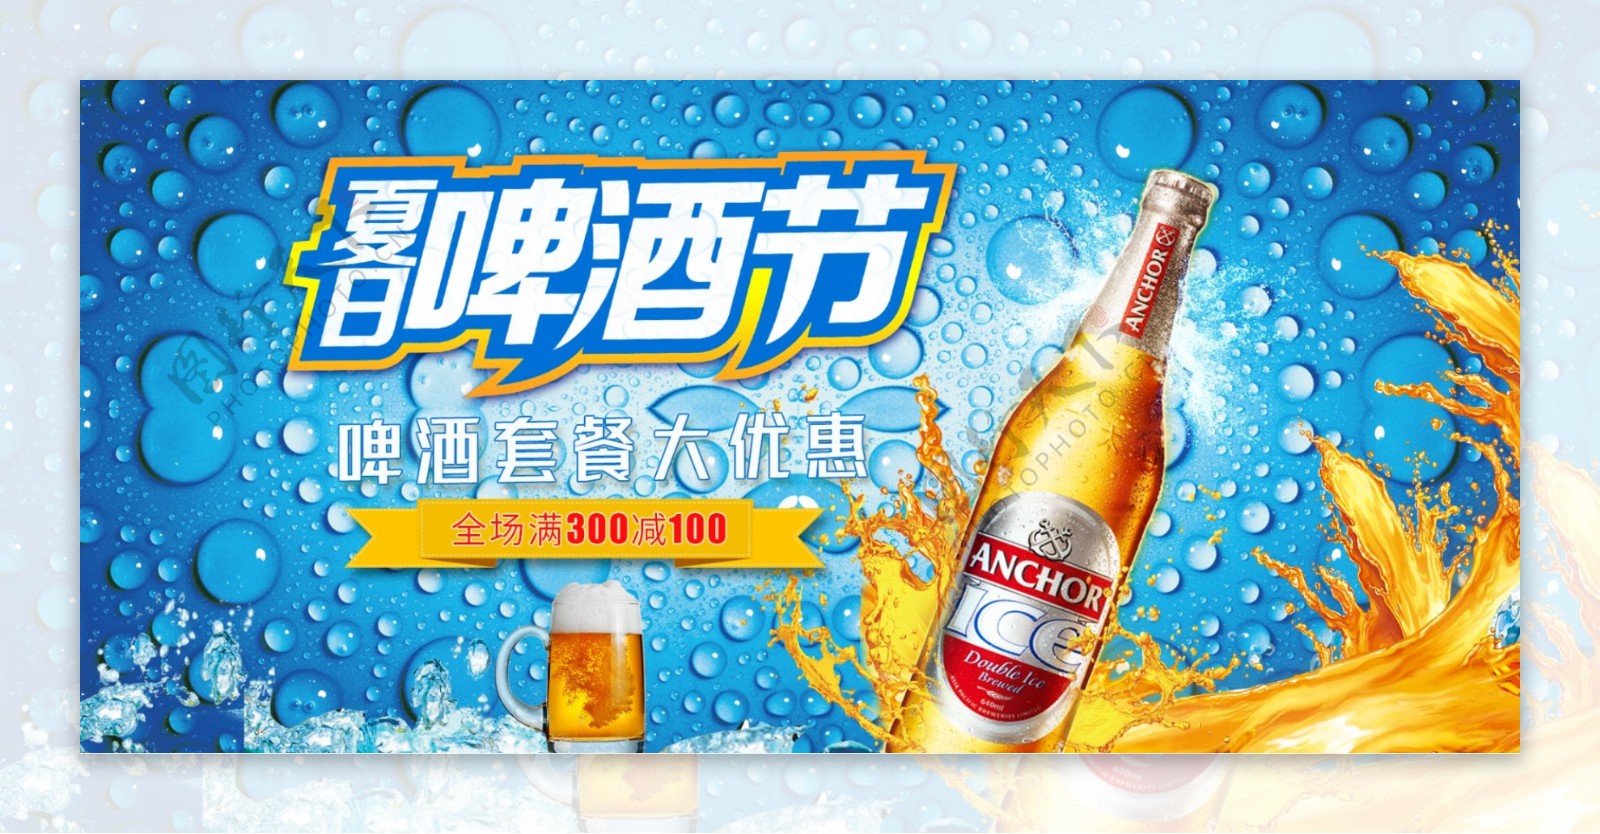 电商夏日啤酒节淘宝天猫促销背景模板海报